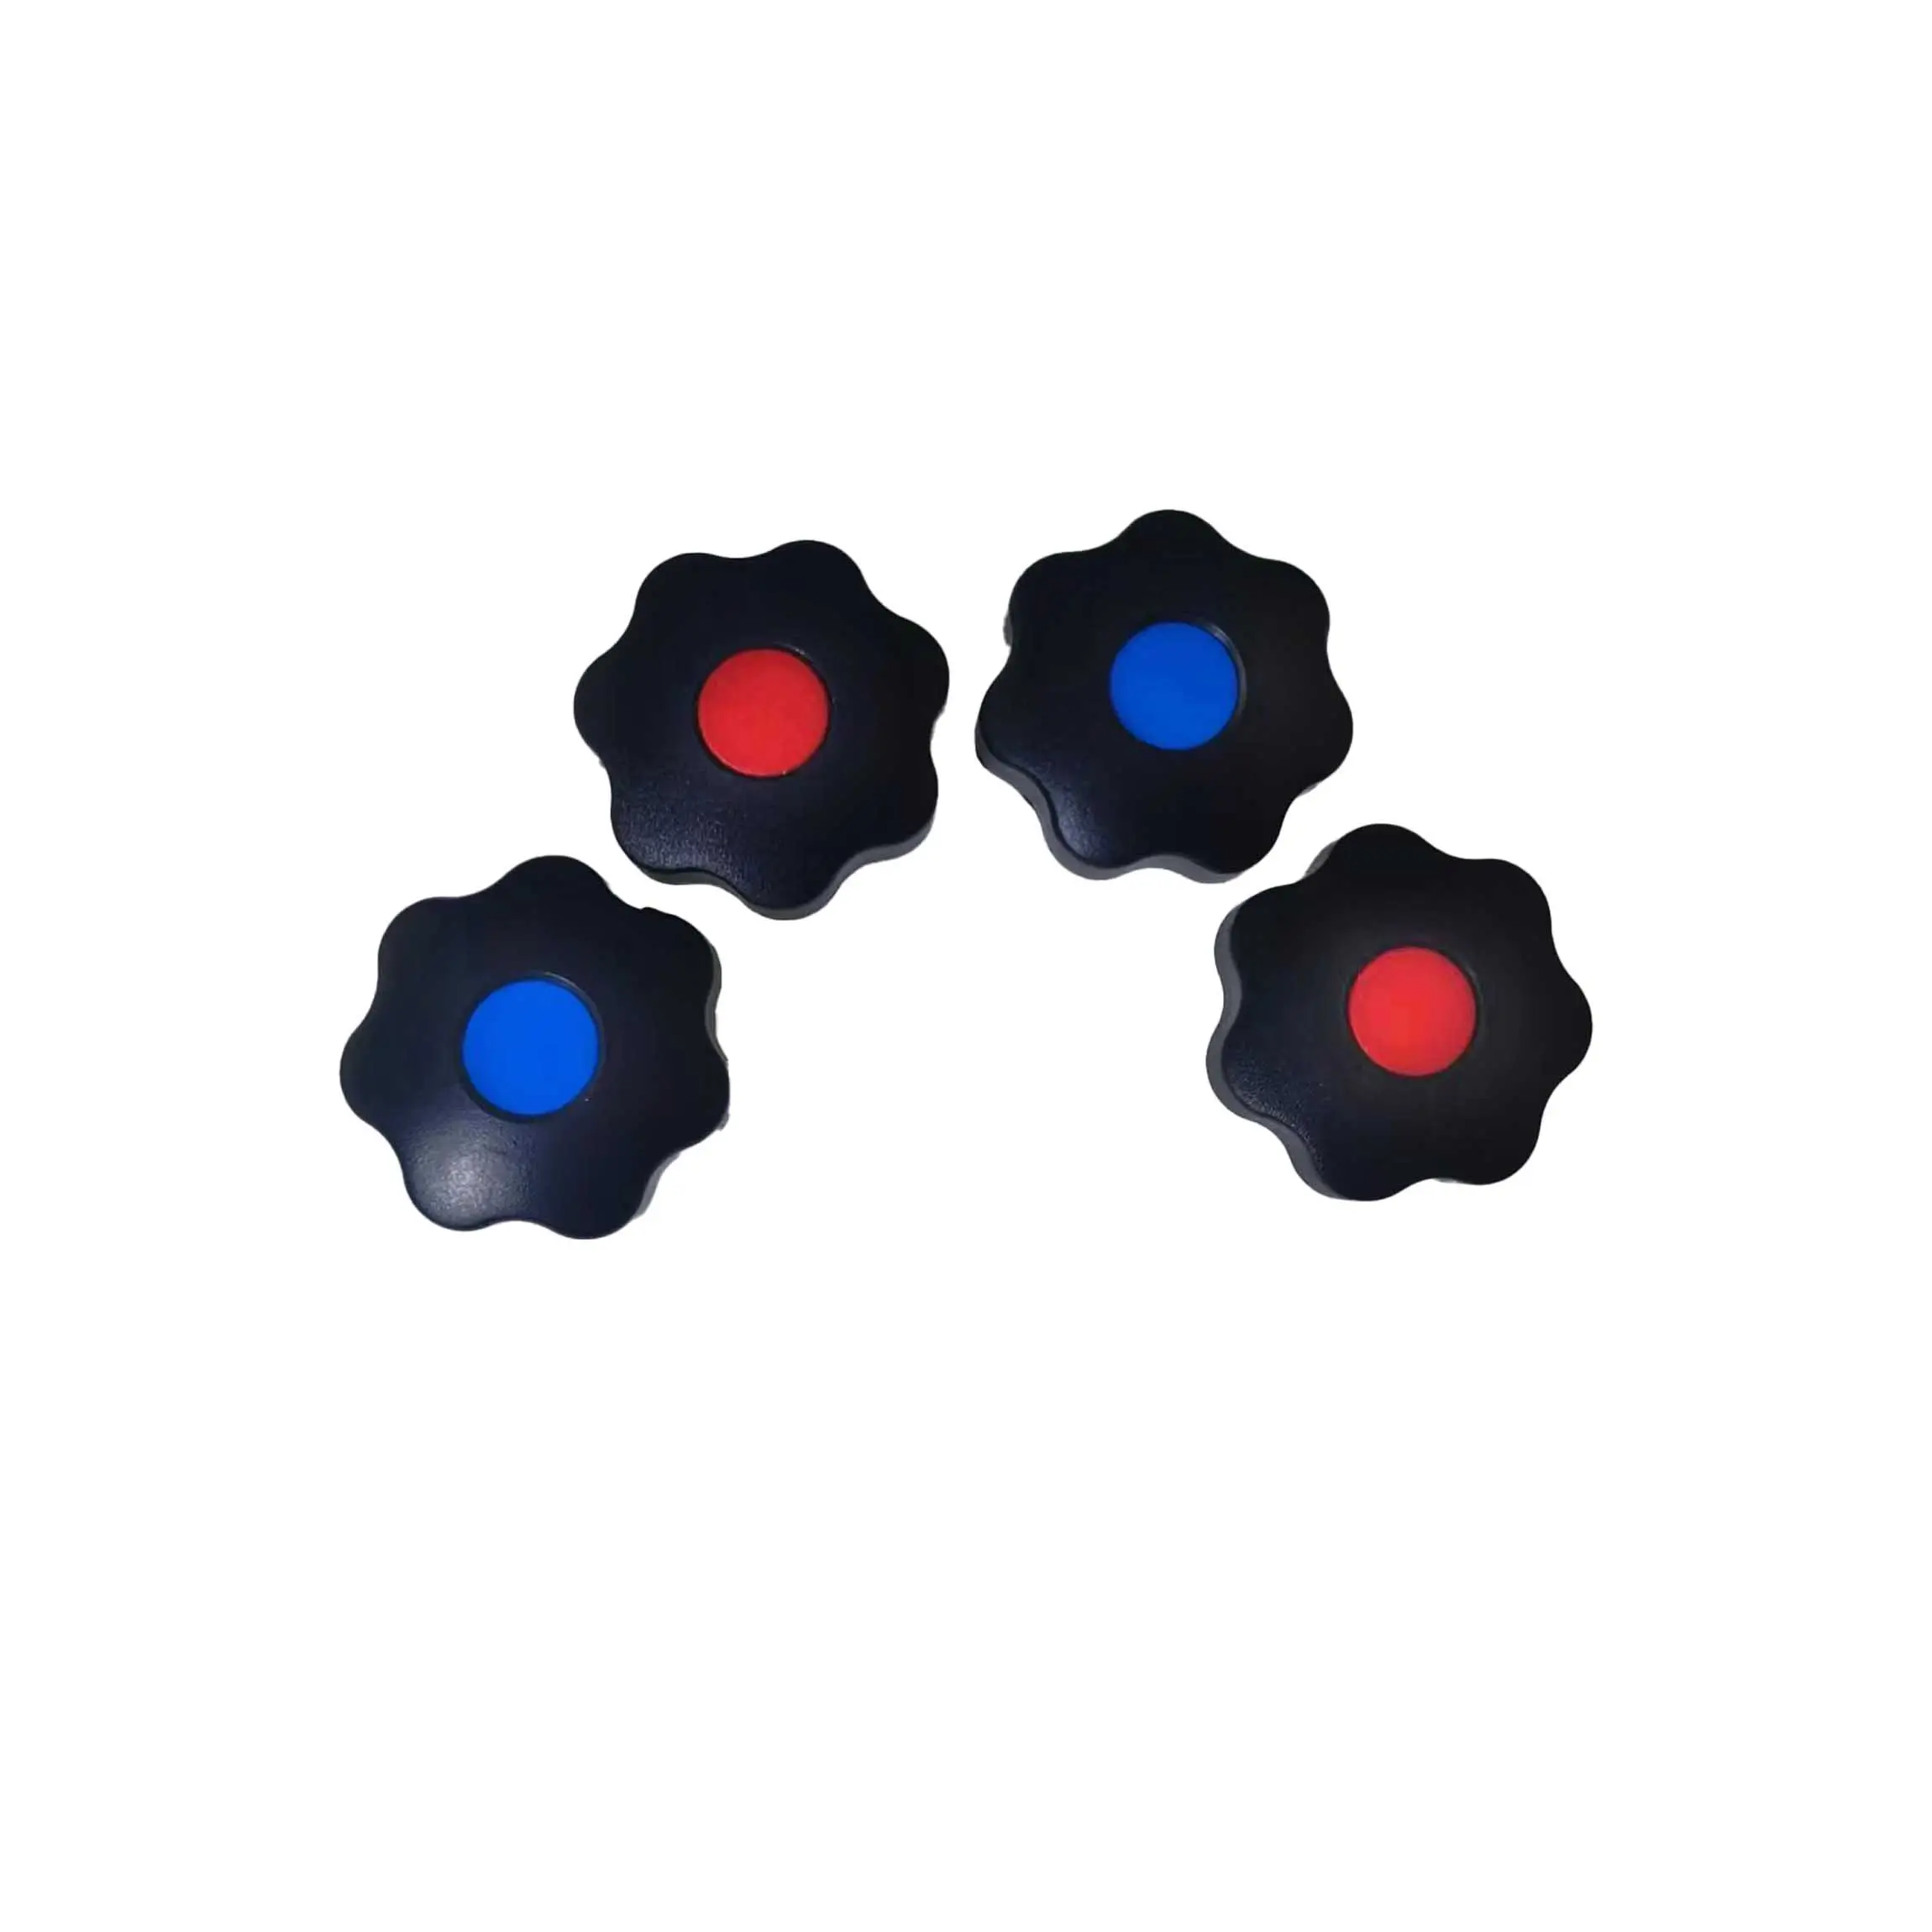 Manopola in plastica a forma di stella nera con manopola a sette stelle in ottone o acciaio inossidabile